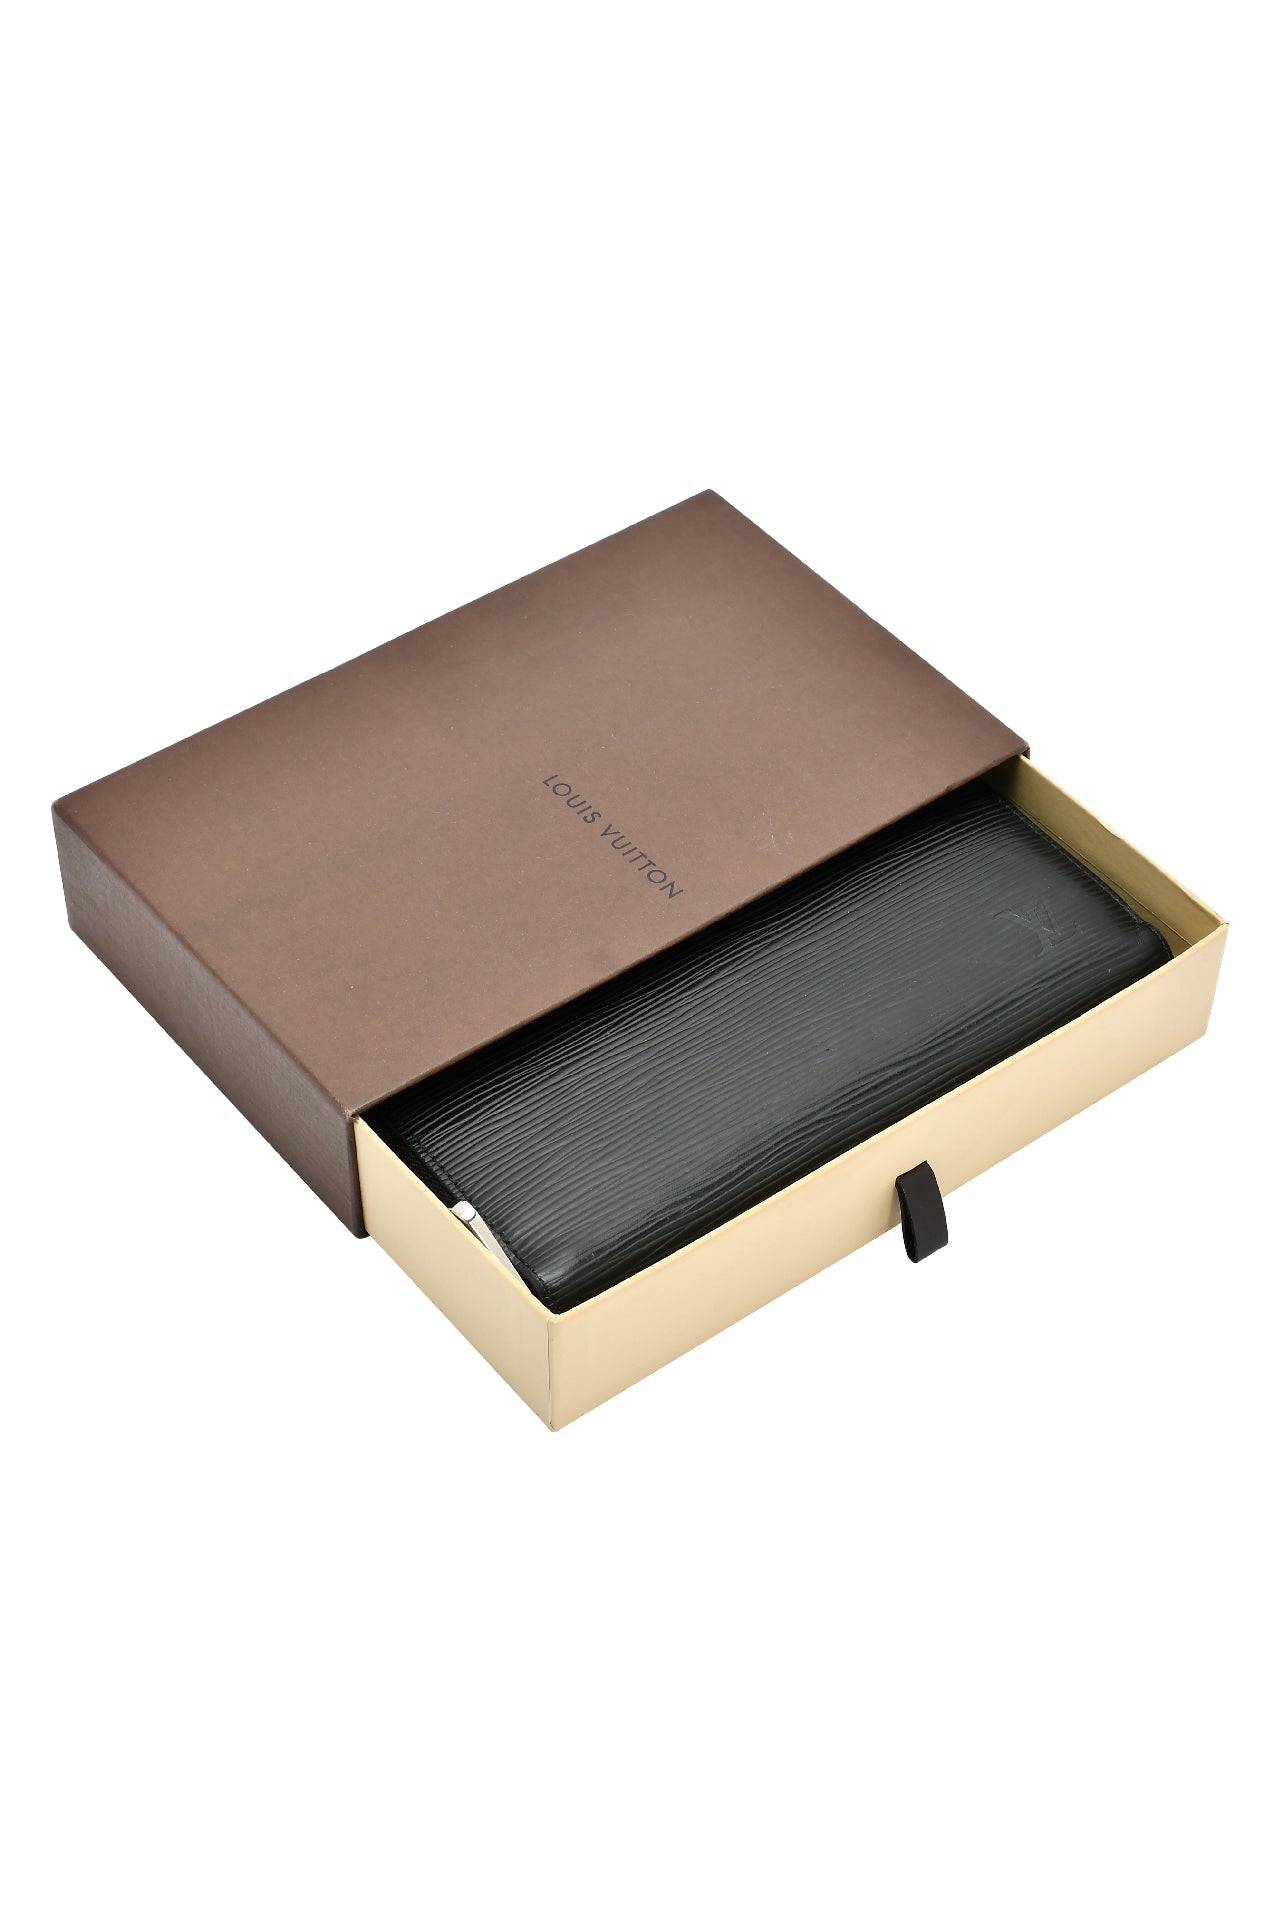 Louis Vuitton Noir Epi Leather Zippy Wallet